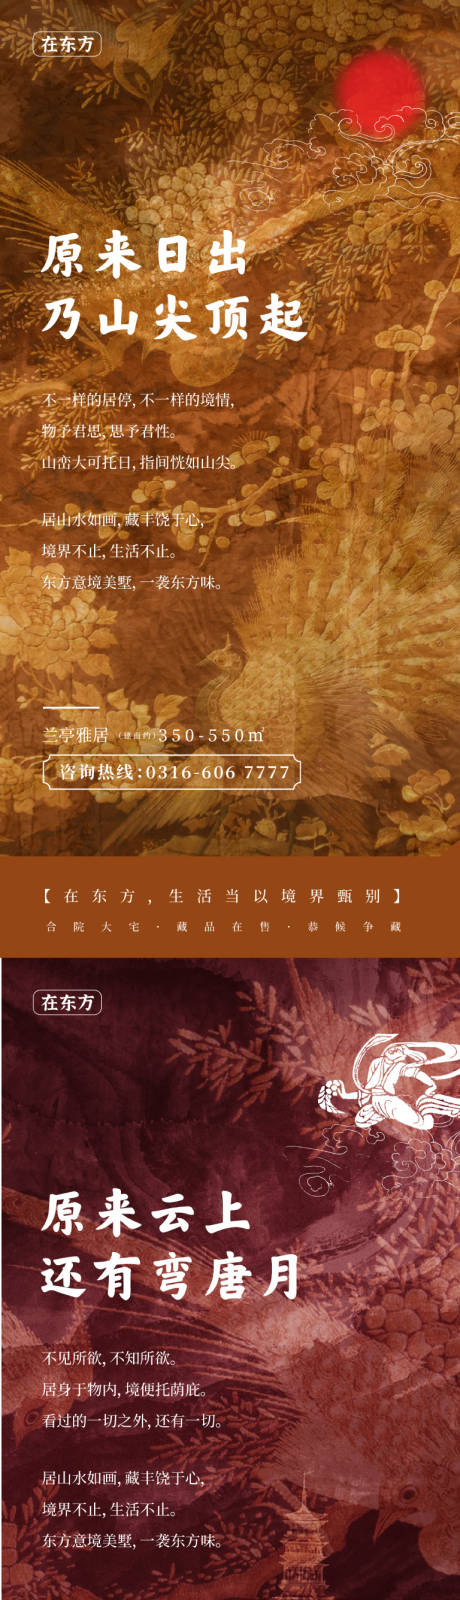 中国风地产系列海报